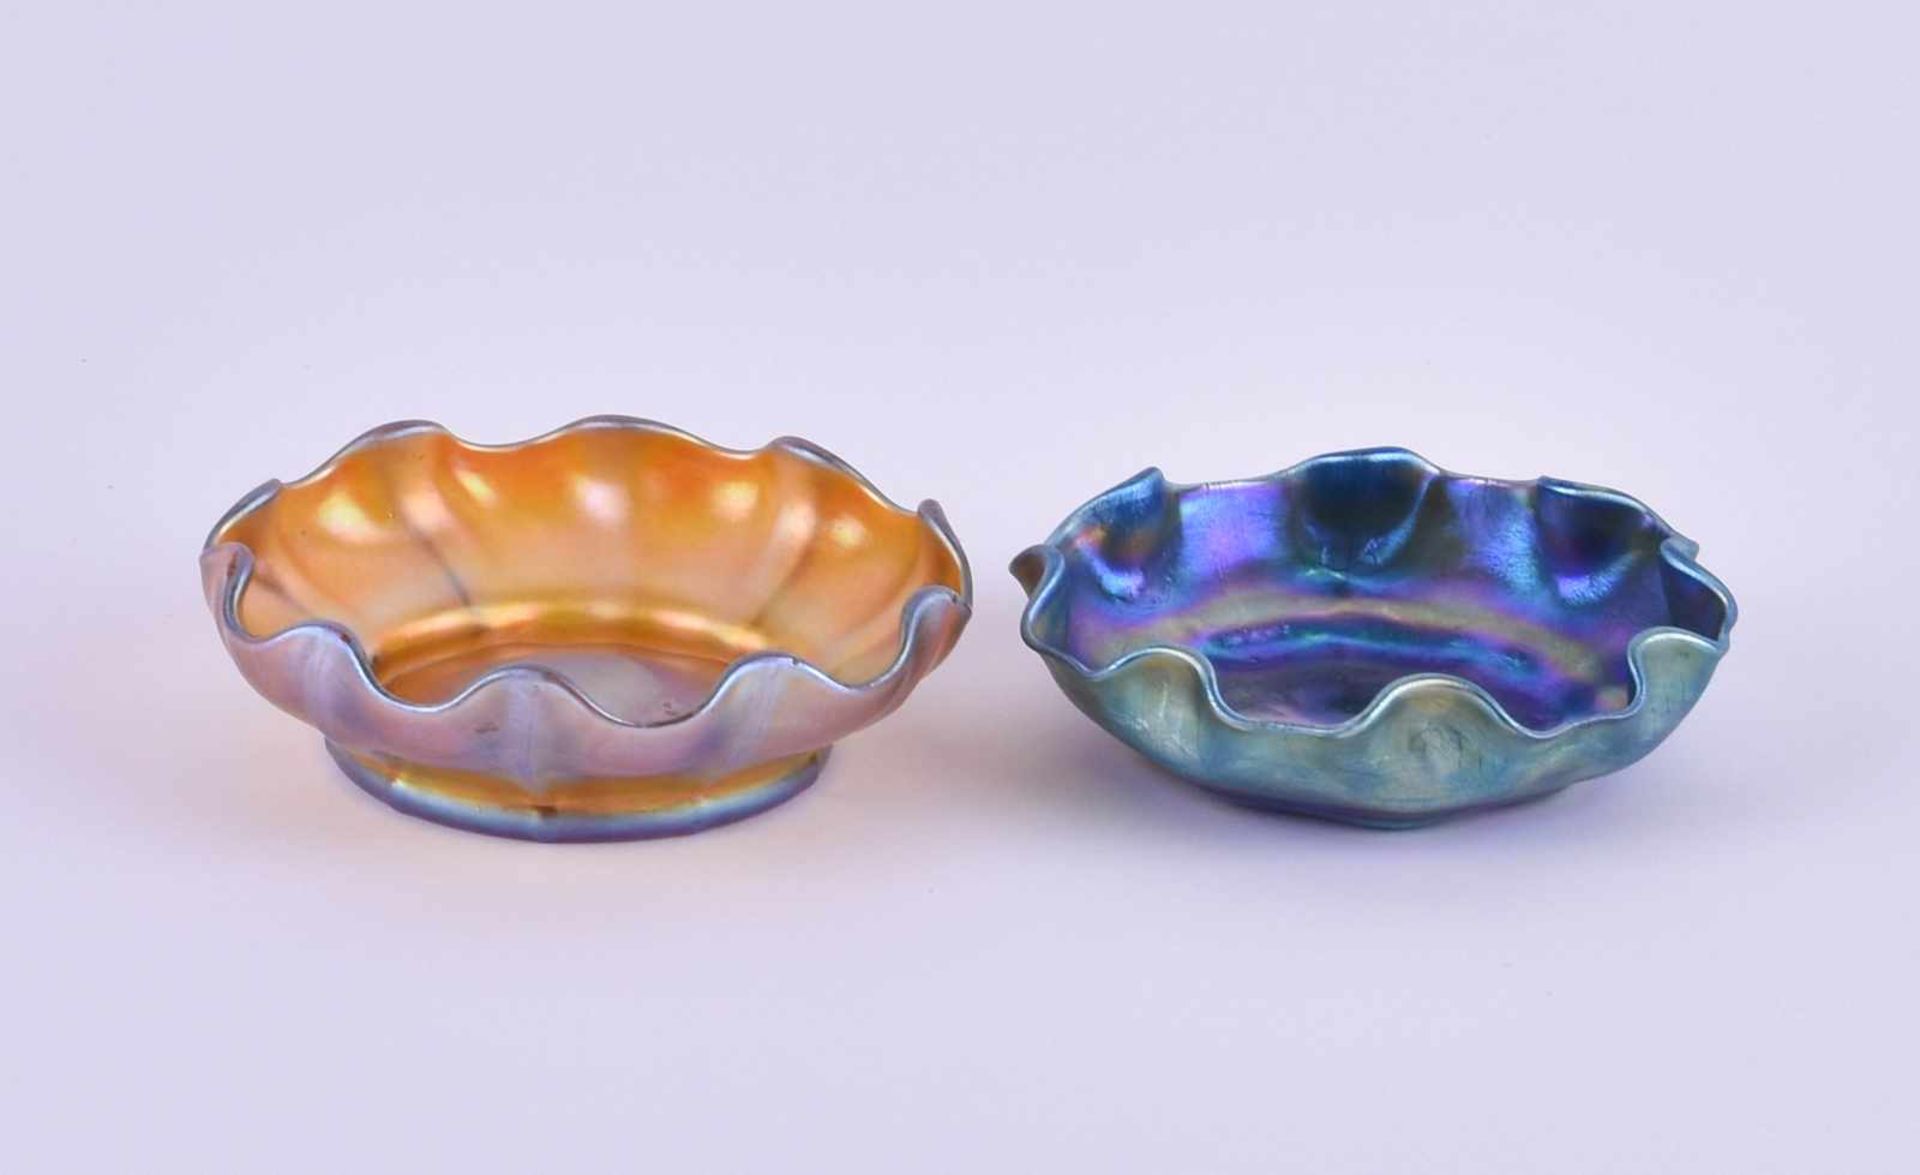 2 Lct Tiffany Favrile Glasschalen um 1910/20gold schillerndes und blau irrisierendes Glas, jeweils